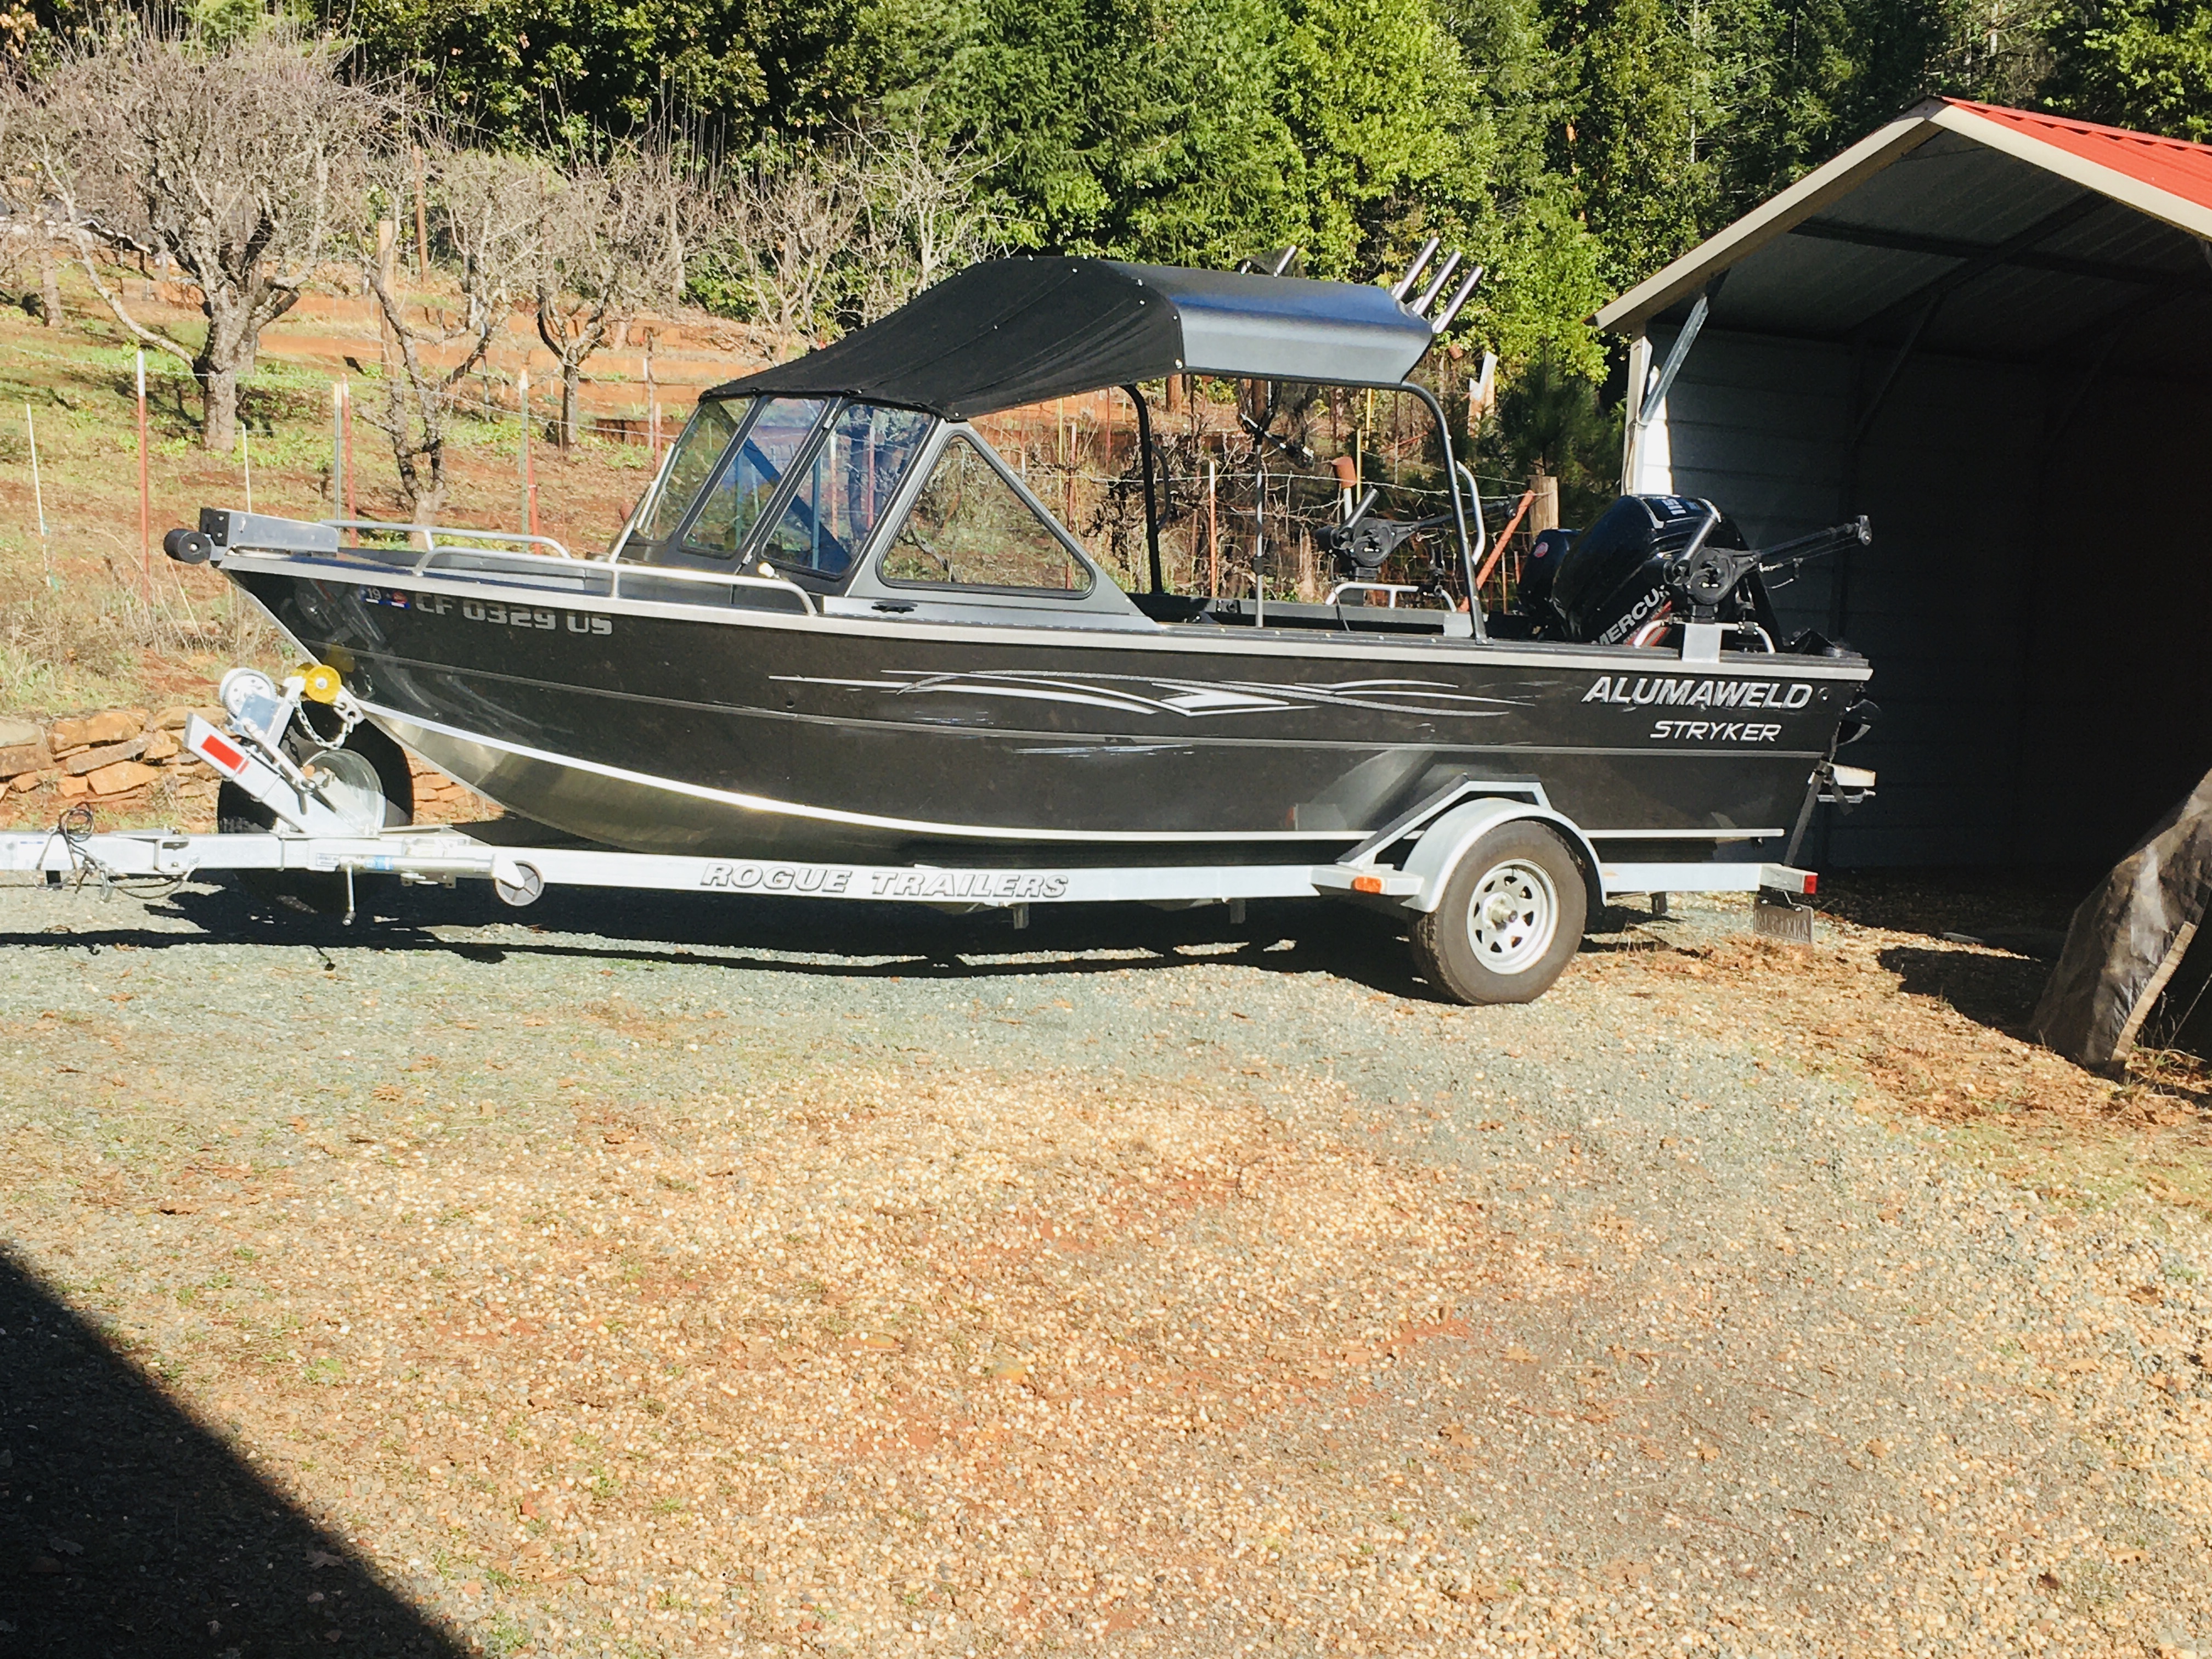 2017 20 foot Alumaweld stryker Fishing boat for sale in Forbestown, CA - image 2 